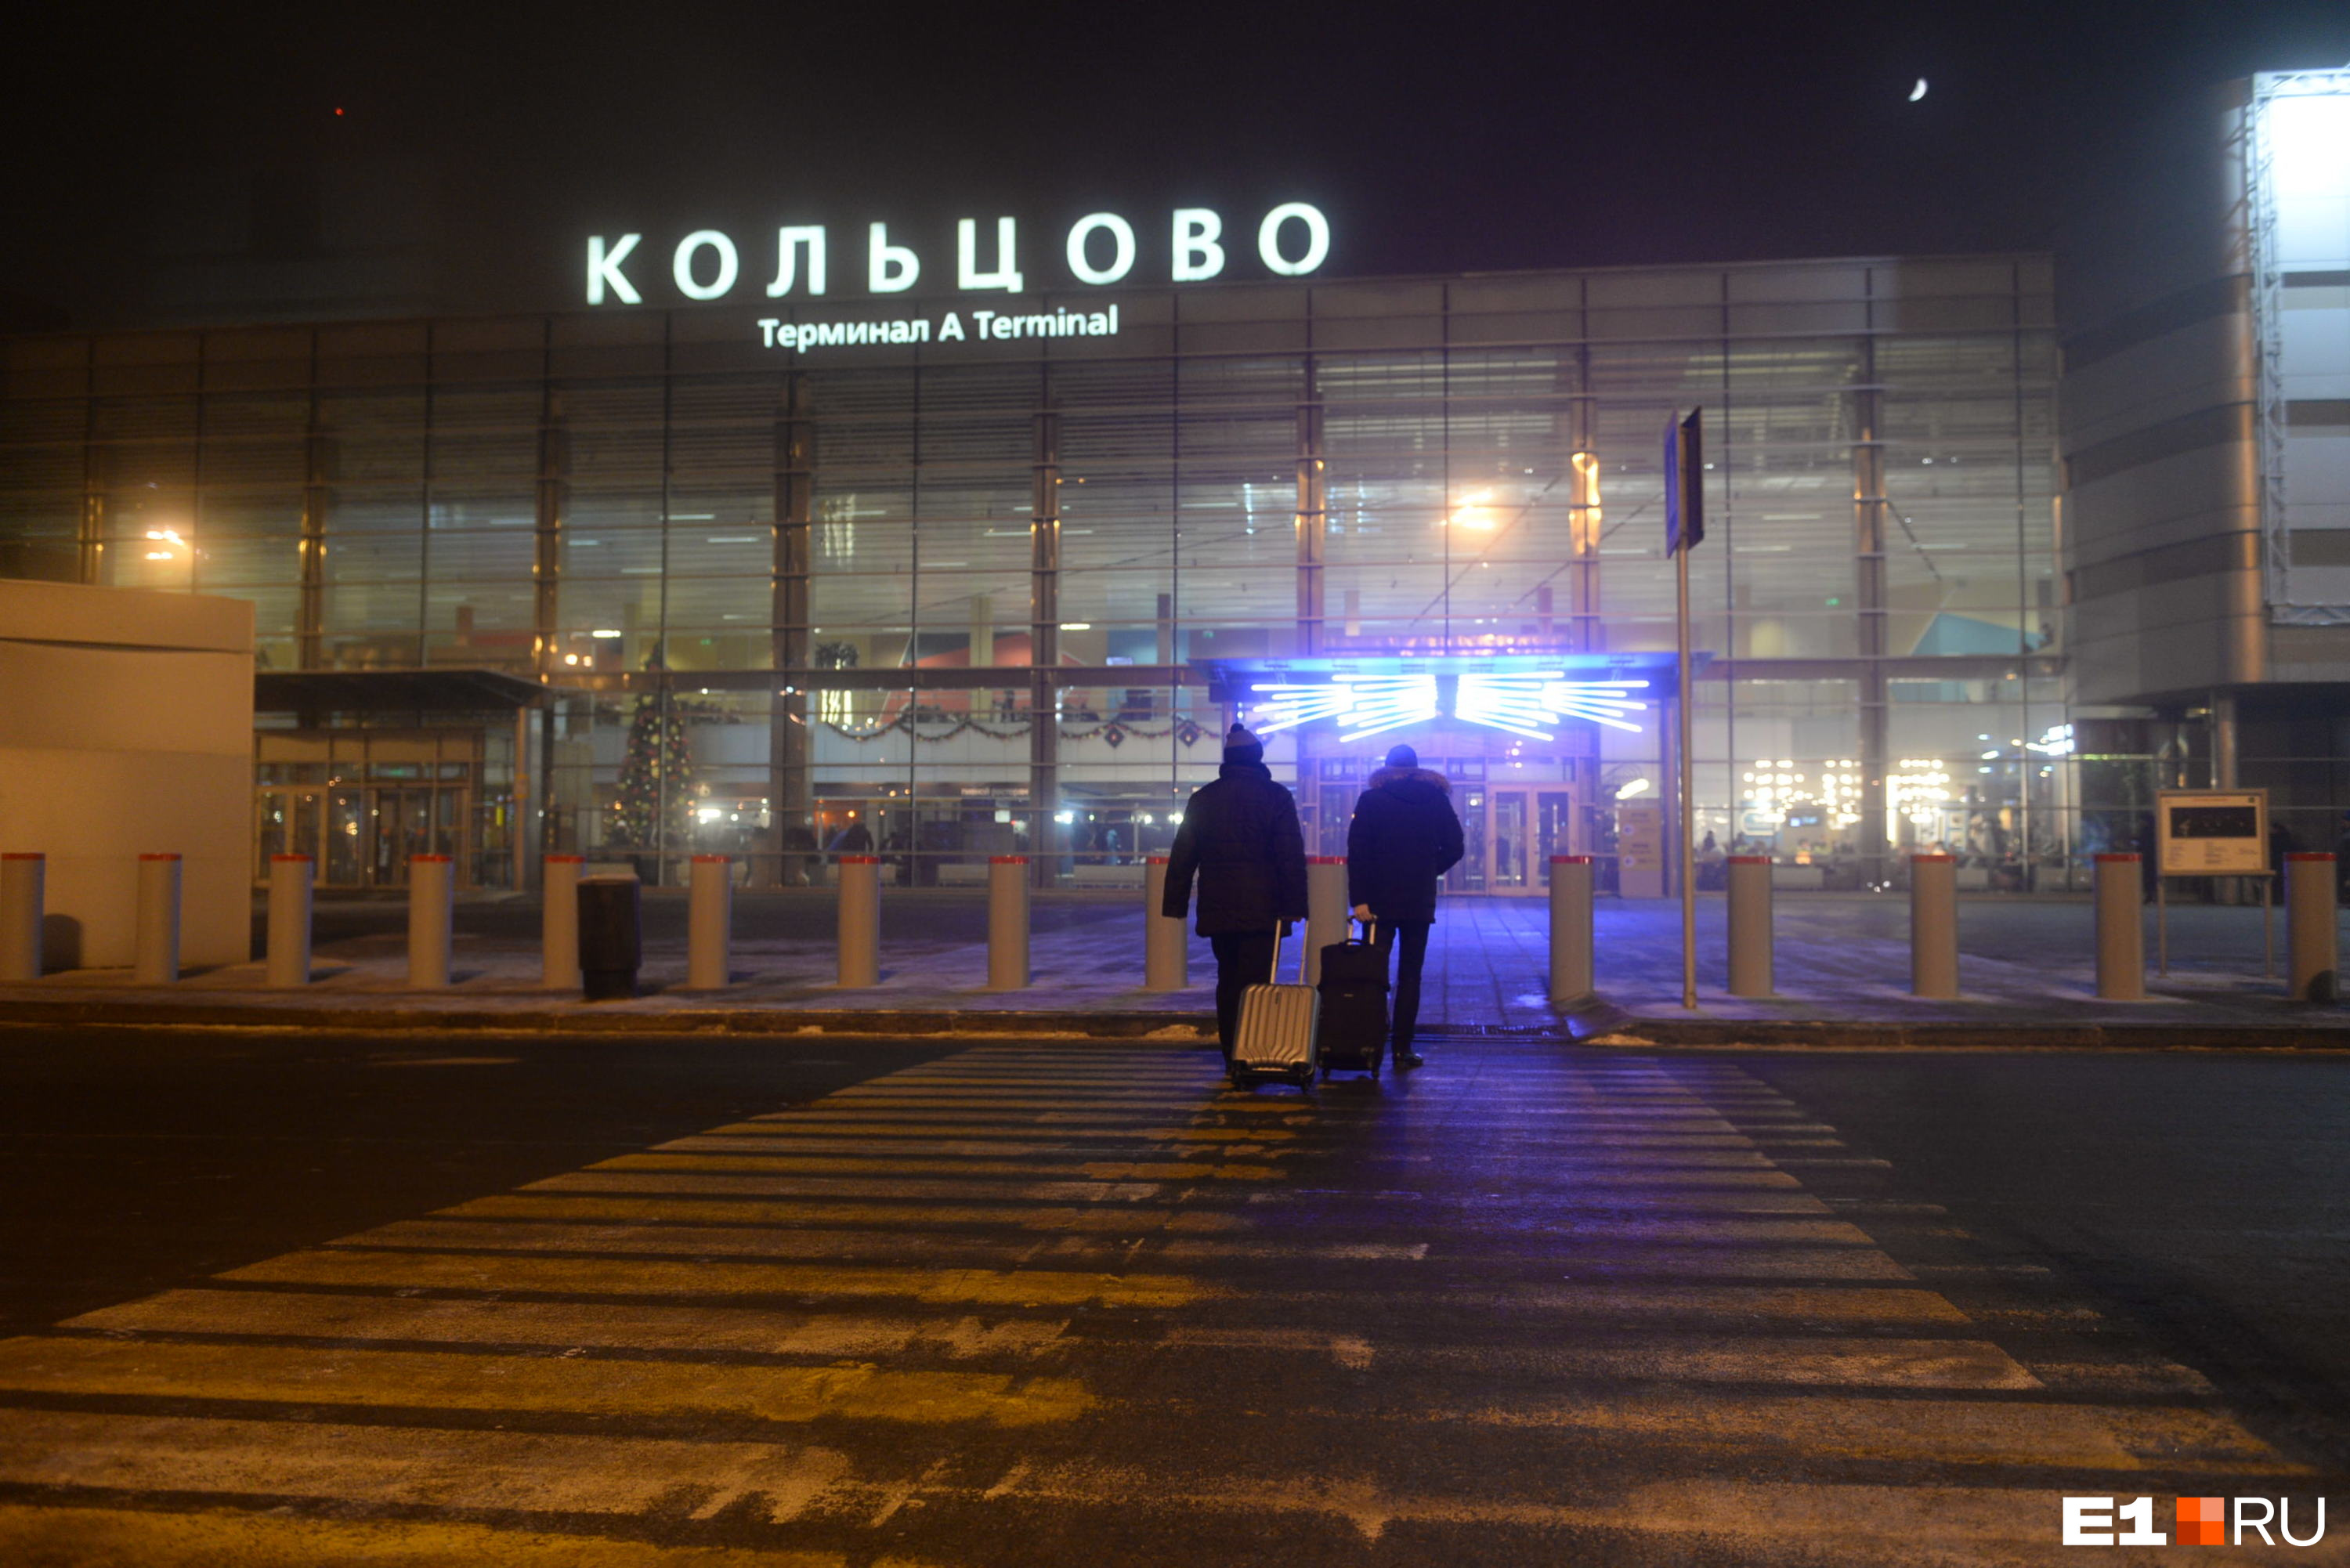 Перелеты в Екатеринбург подорожали в несколько раз. Что случилось?